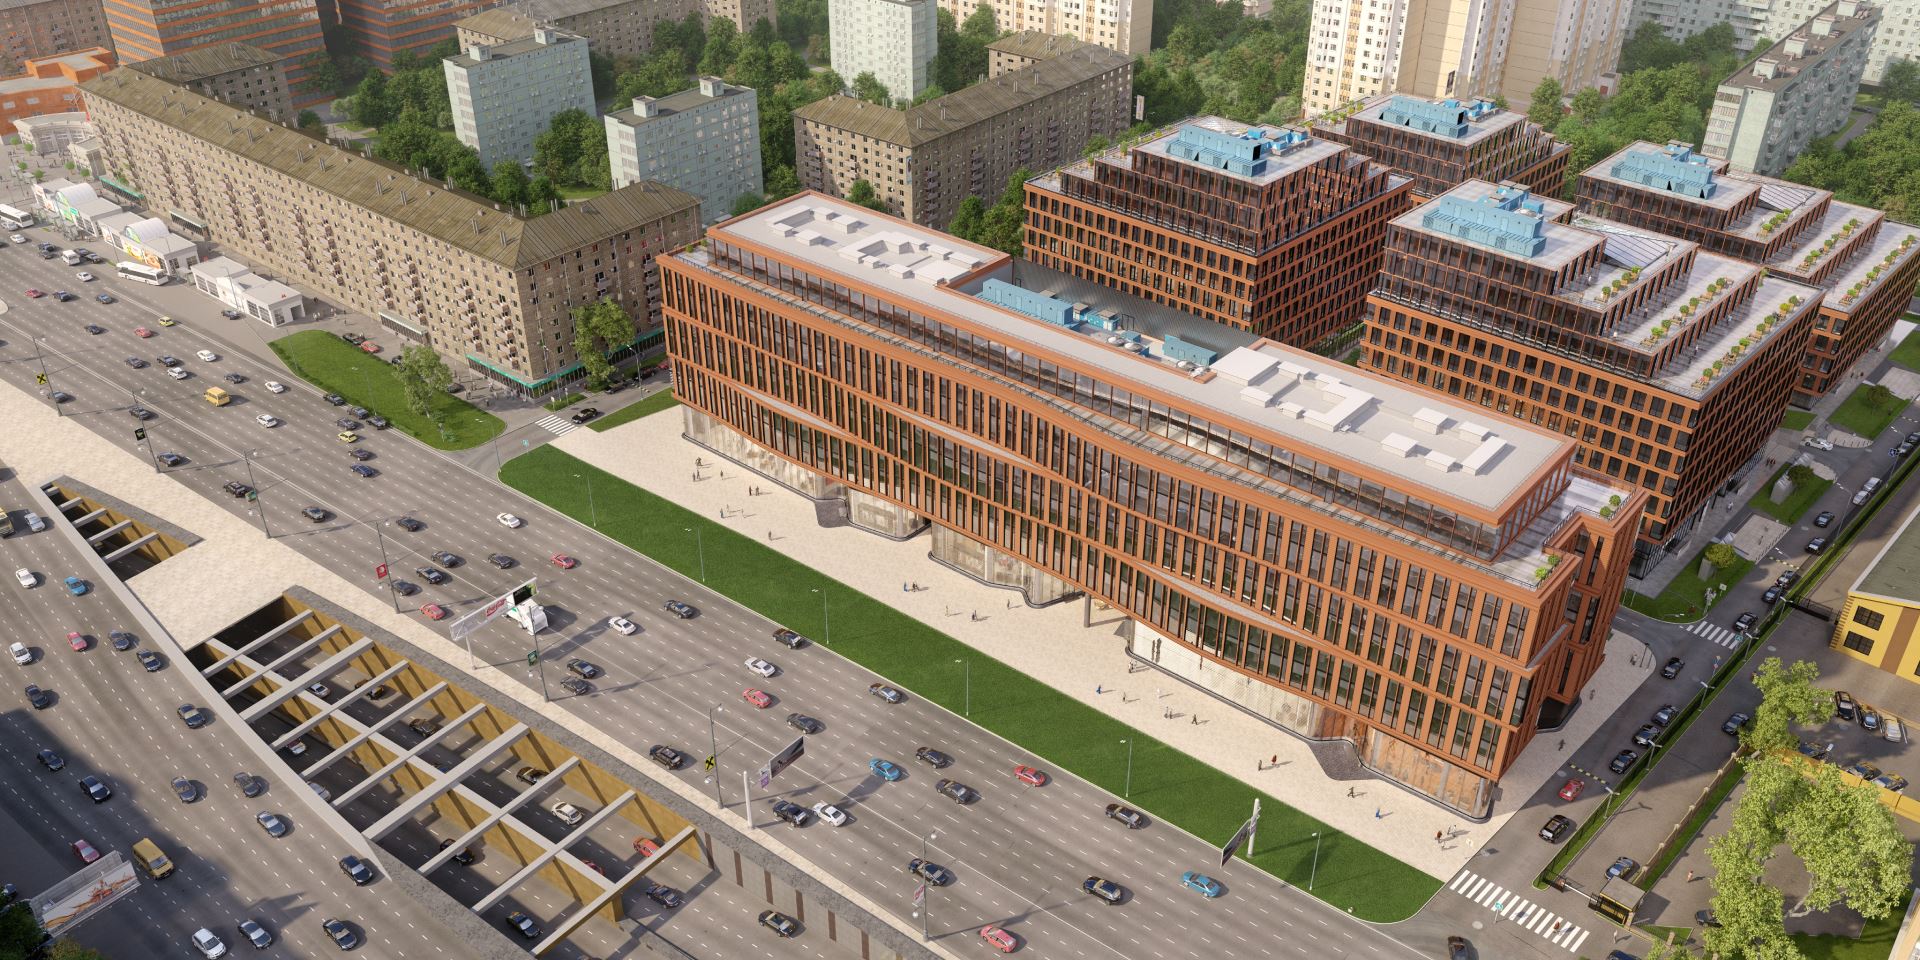 Проект Многофункционального комплекса ГК «АЛКОН» был одобрен 21 мая 2014 года на Архсовете Москвы.